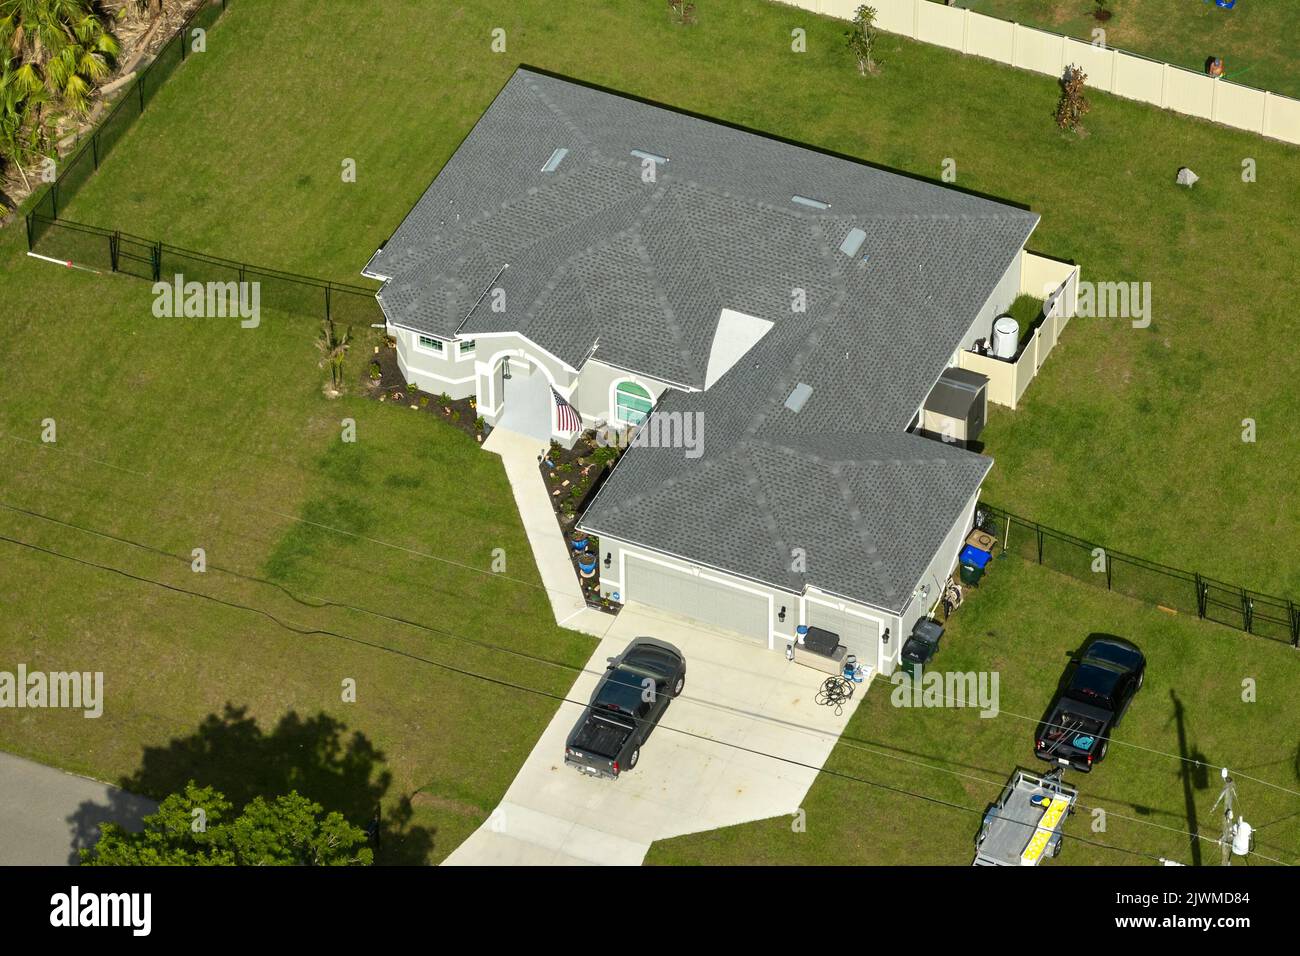 Vue aérienne d'une maison privée américaine contemporaine typique avec toit recouvert de bardeaux d'asphalte et pelouse verte sur cour Banque D'Images